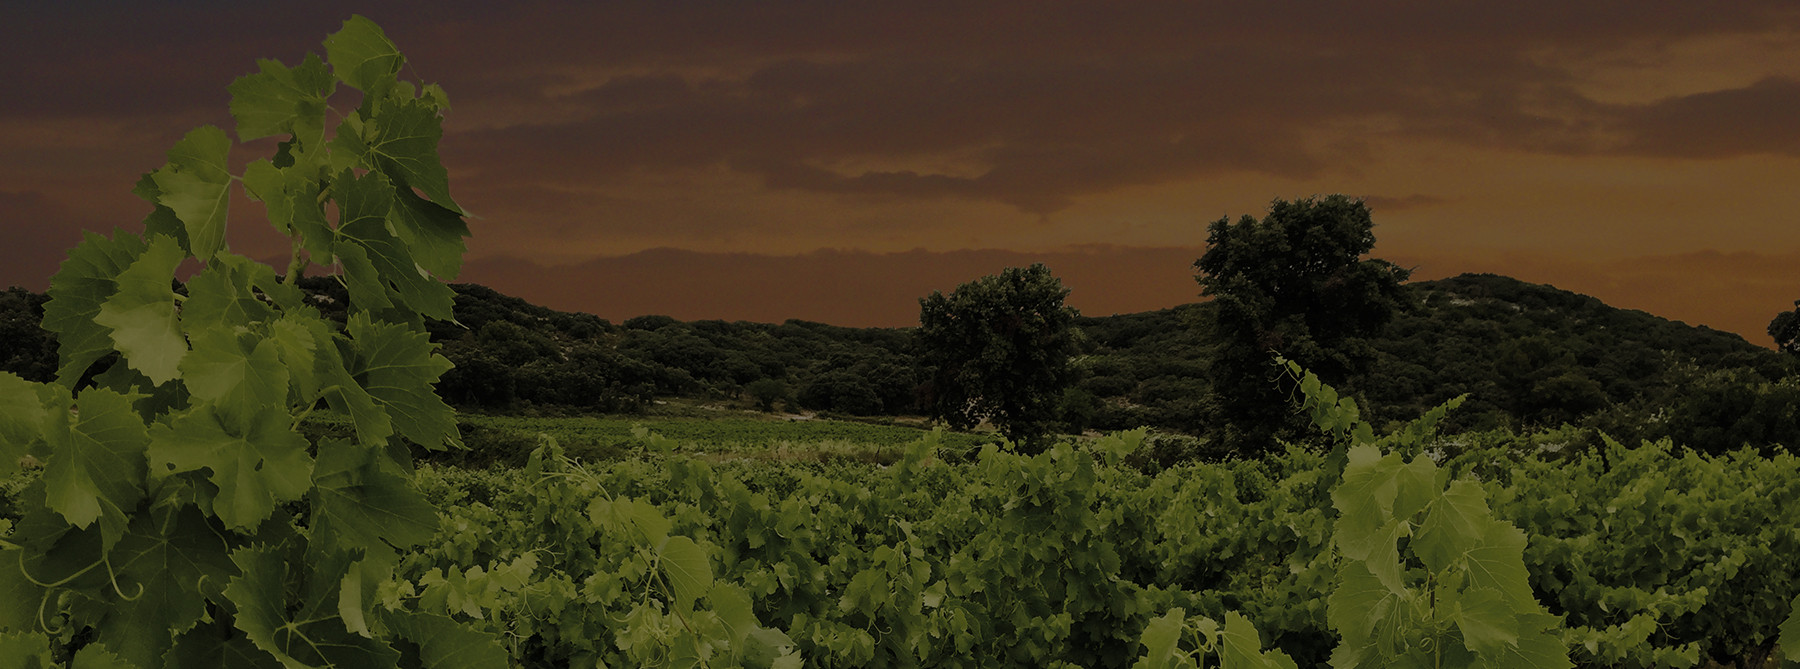 Les vignes de Roc Folassière sous un ciel orange